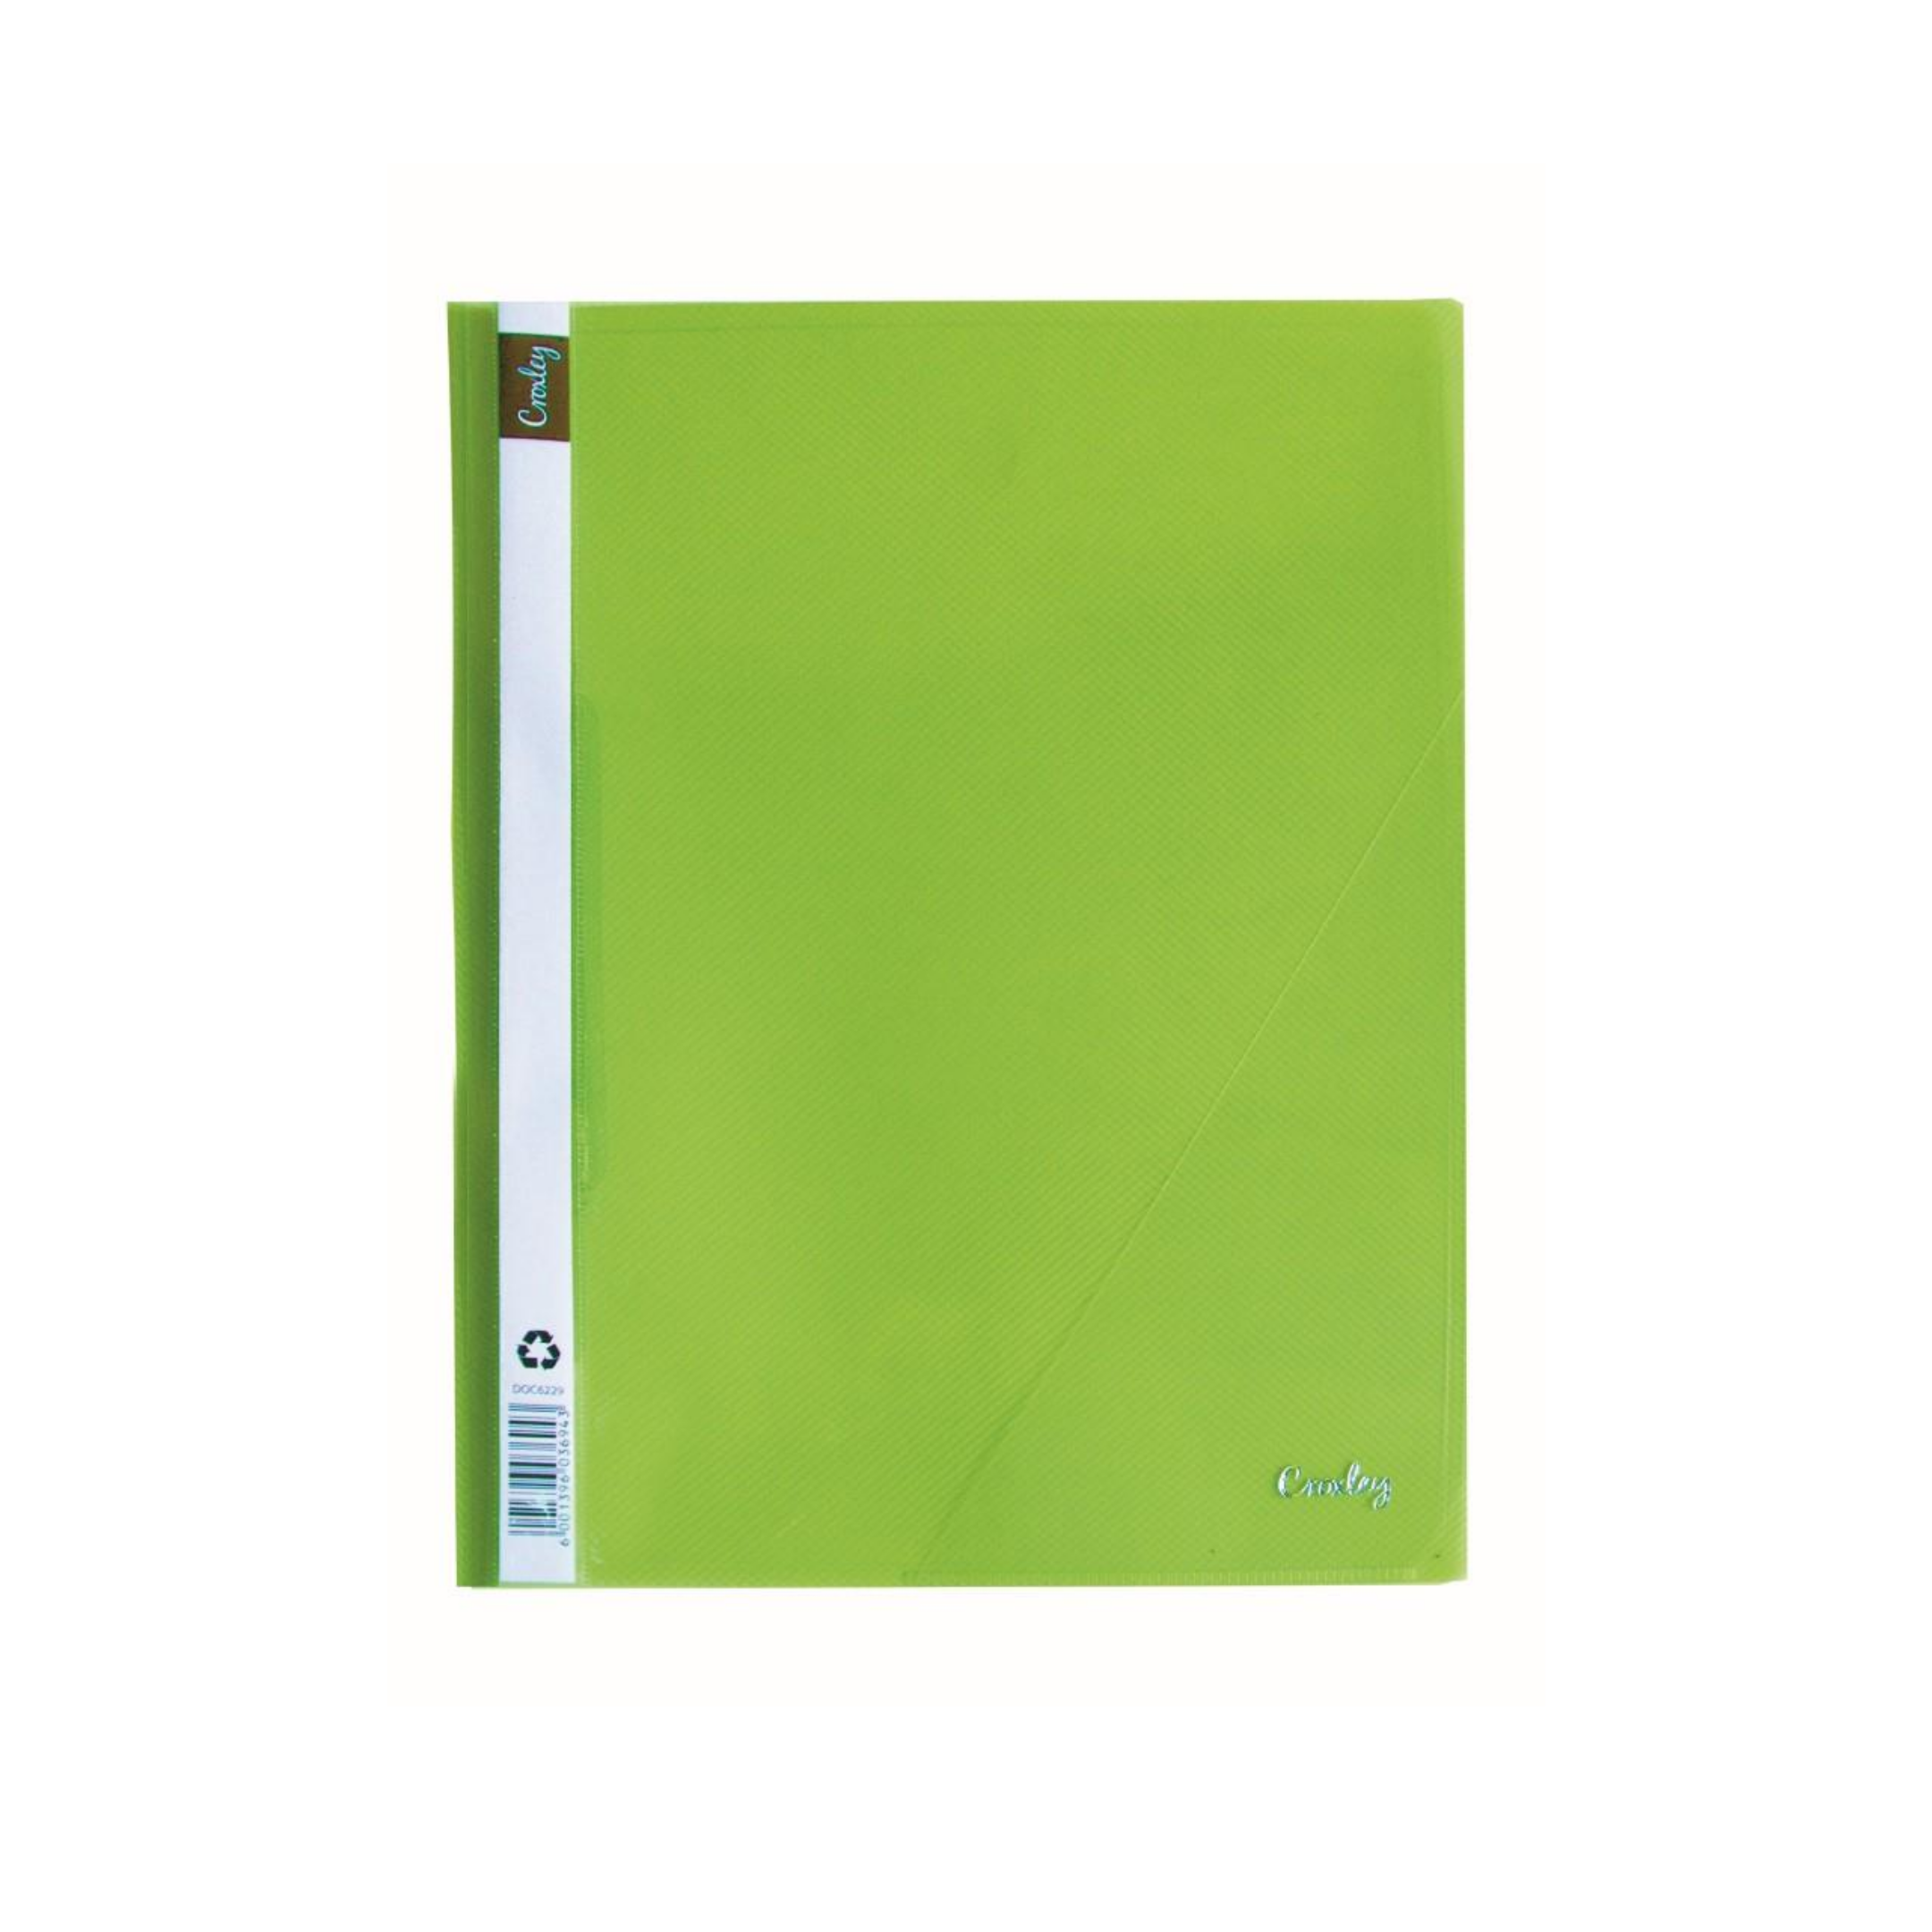 Croxley Presentation Folder Green